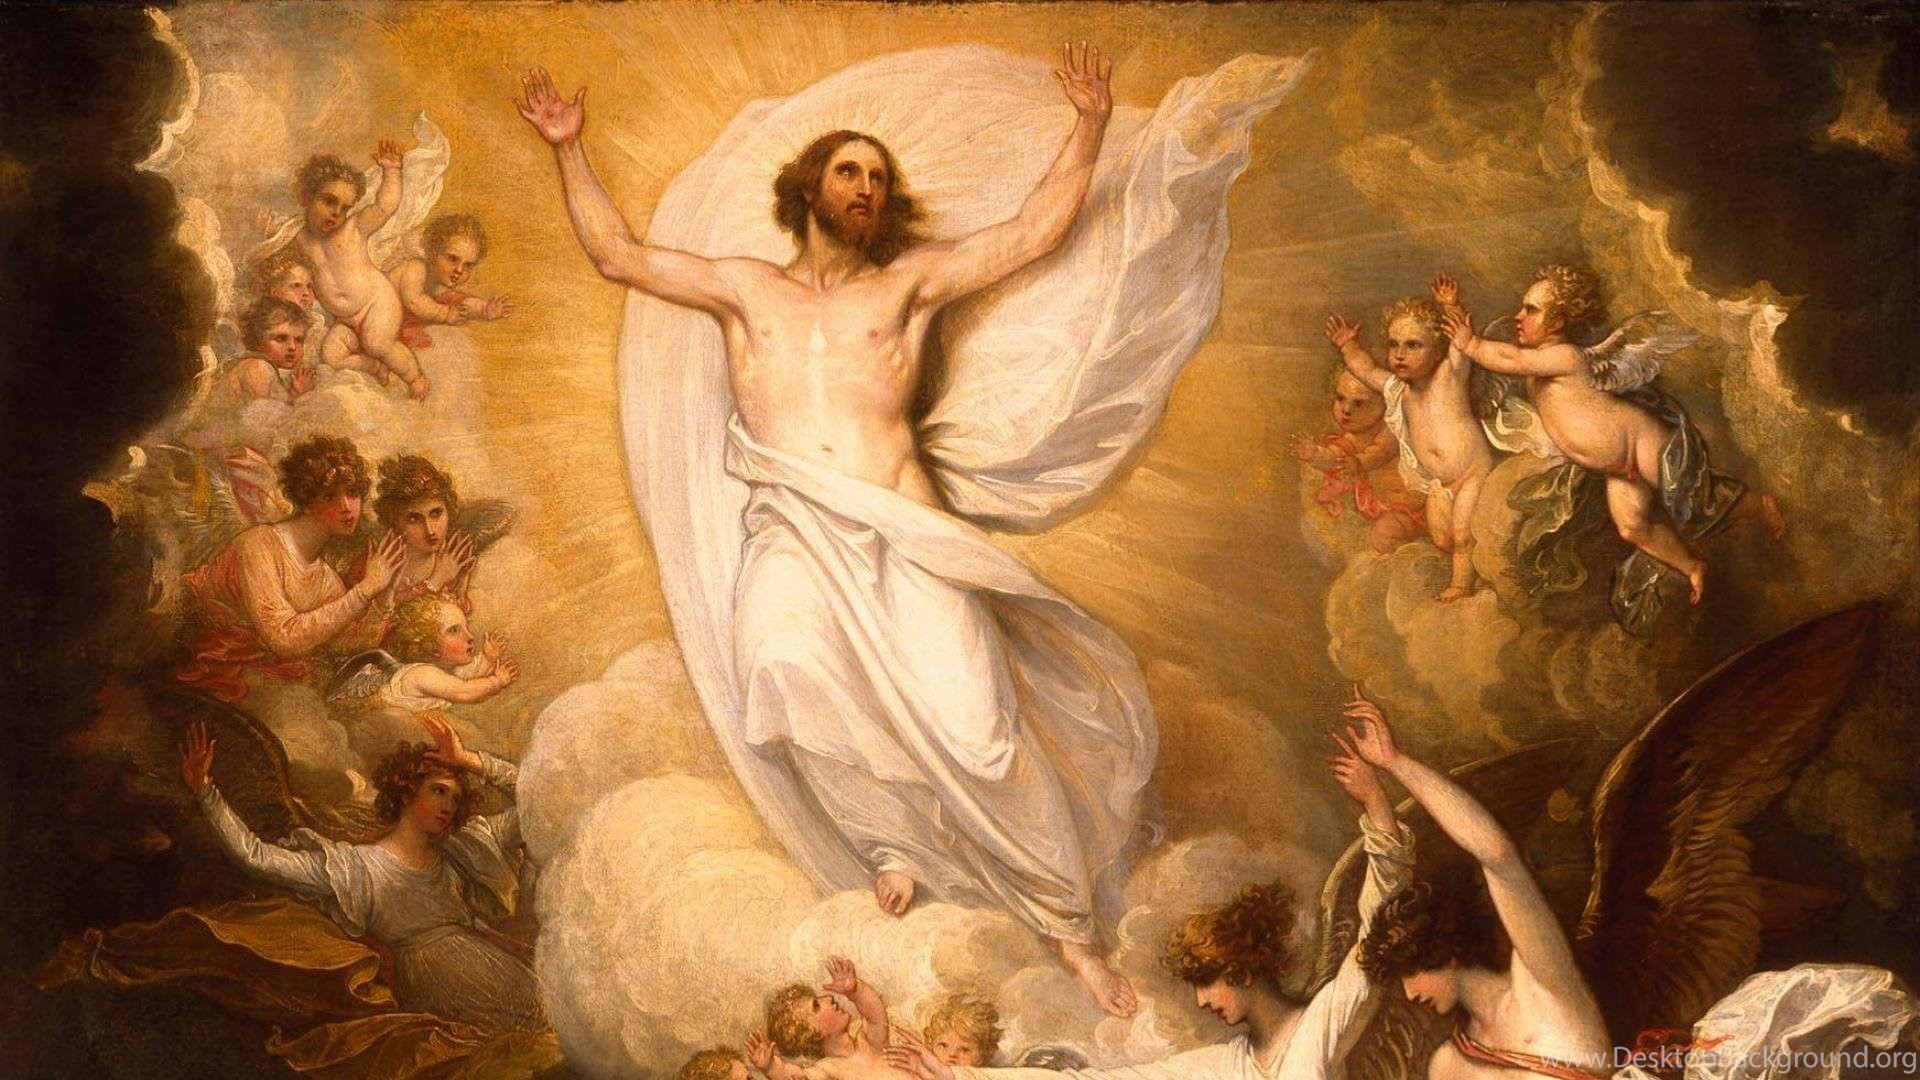 Album Ảnh Chúa Phục sinh - Easter Day Jesus HD Wallpapers | Phim Công giáo  HD